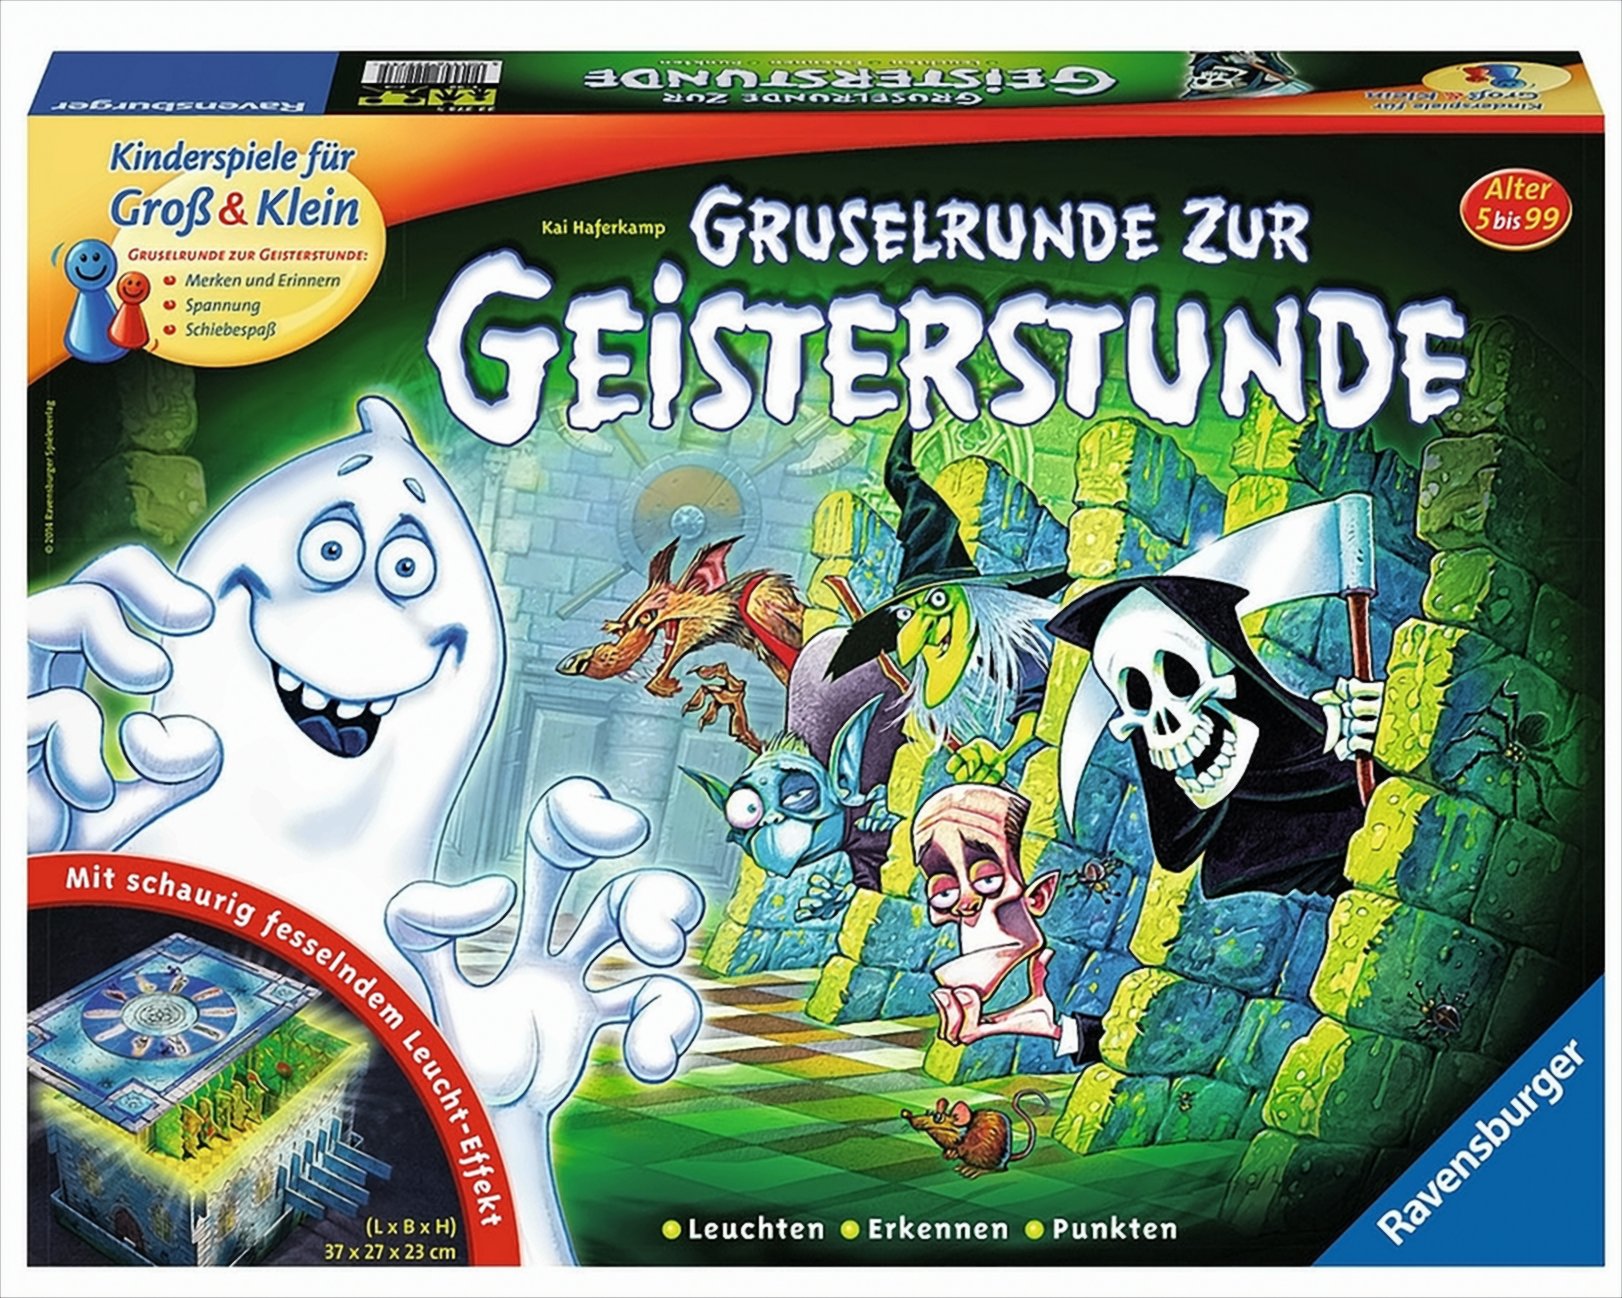 Gruselrunde zur Geisterstunde von Ravensburger Spieleverlag